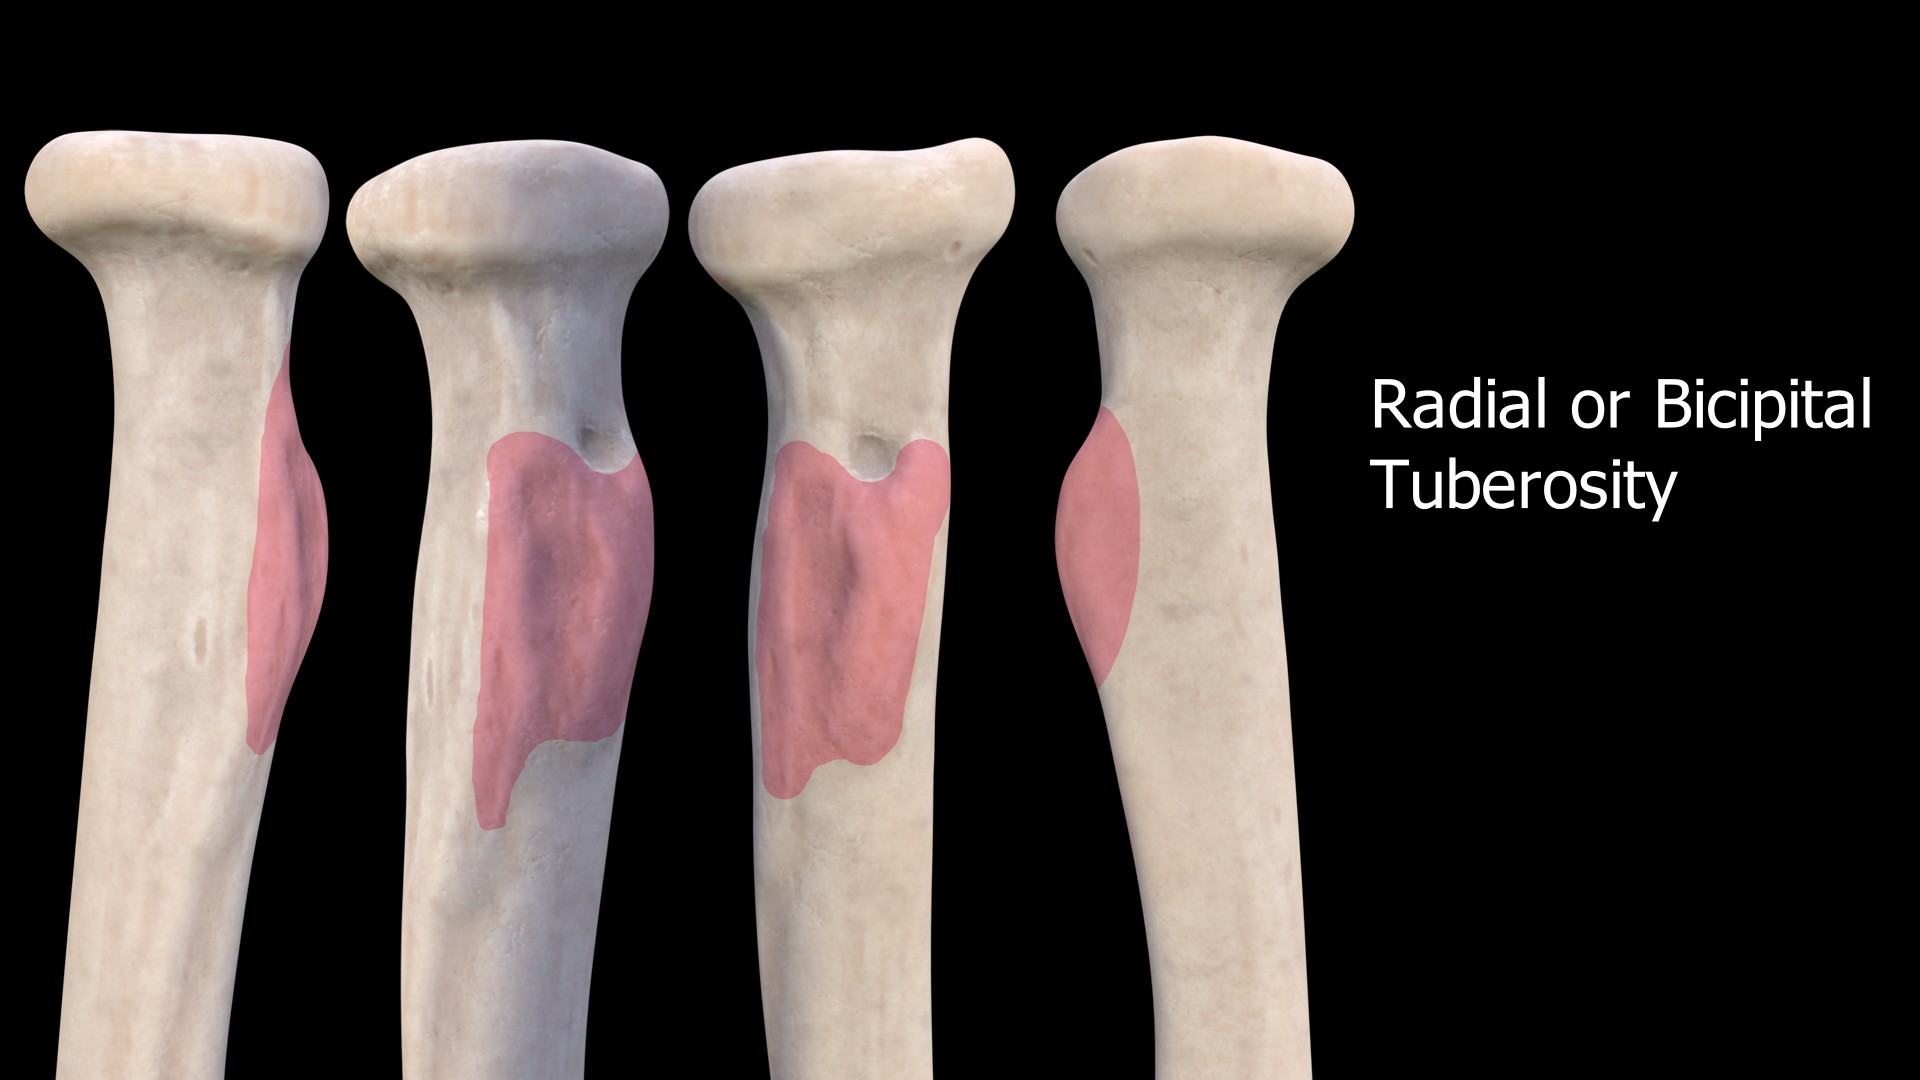 Radial Tuberosity or Bicipital Tuberosity